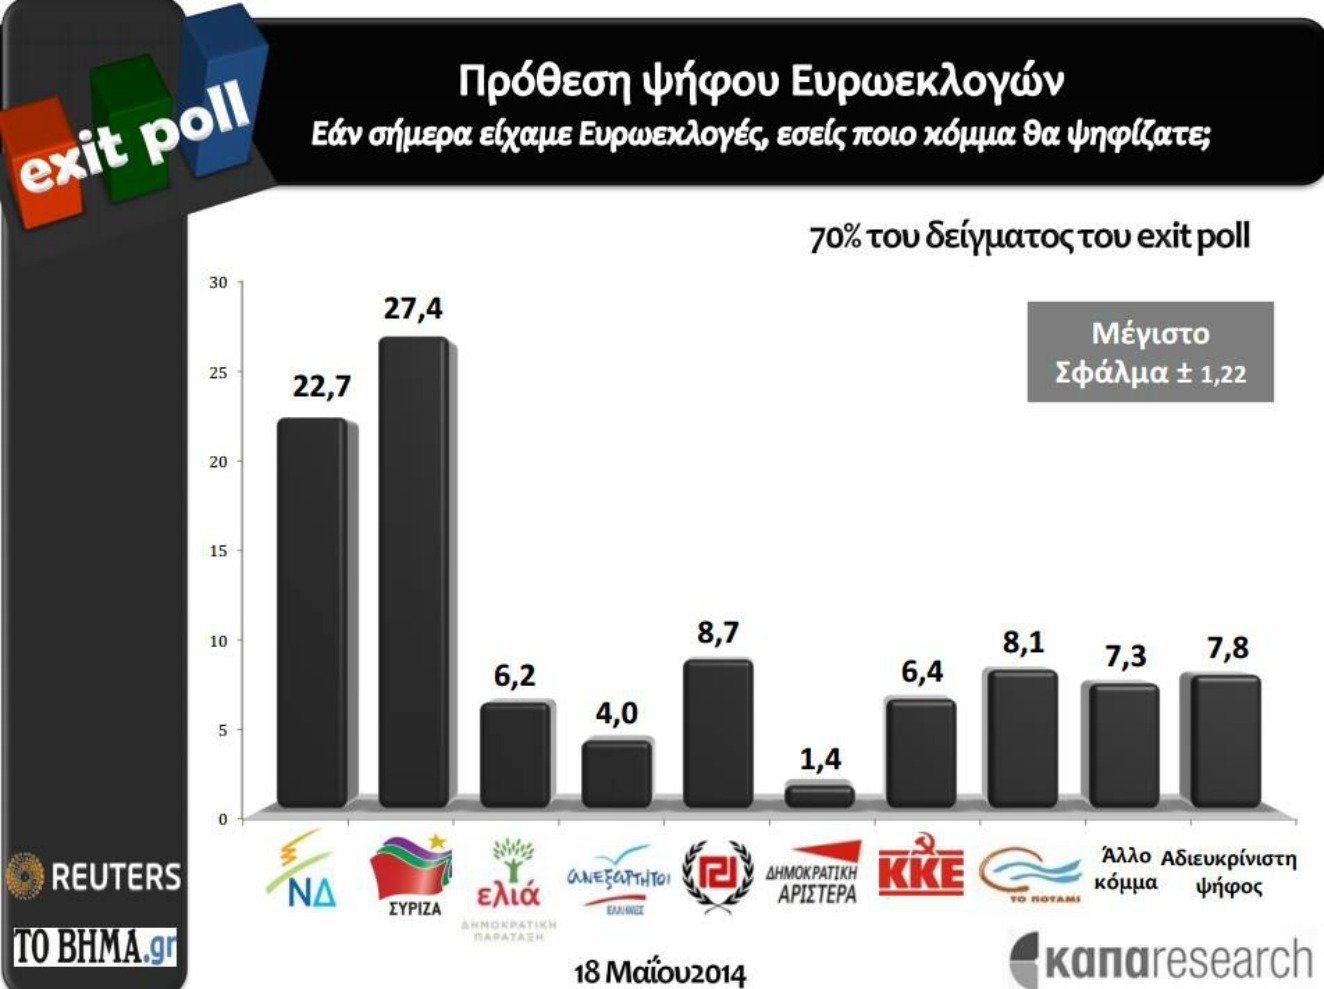 Πρωτιά ΣΥΡΙΖΑ με άνοιγμα ψαλίδας (4,7%) στην πρόθεση ψήφου για τις Ευρωεκλογές